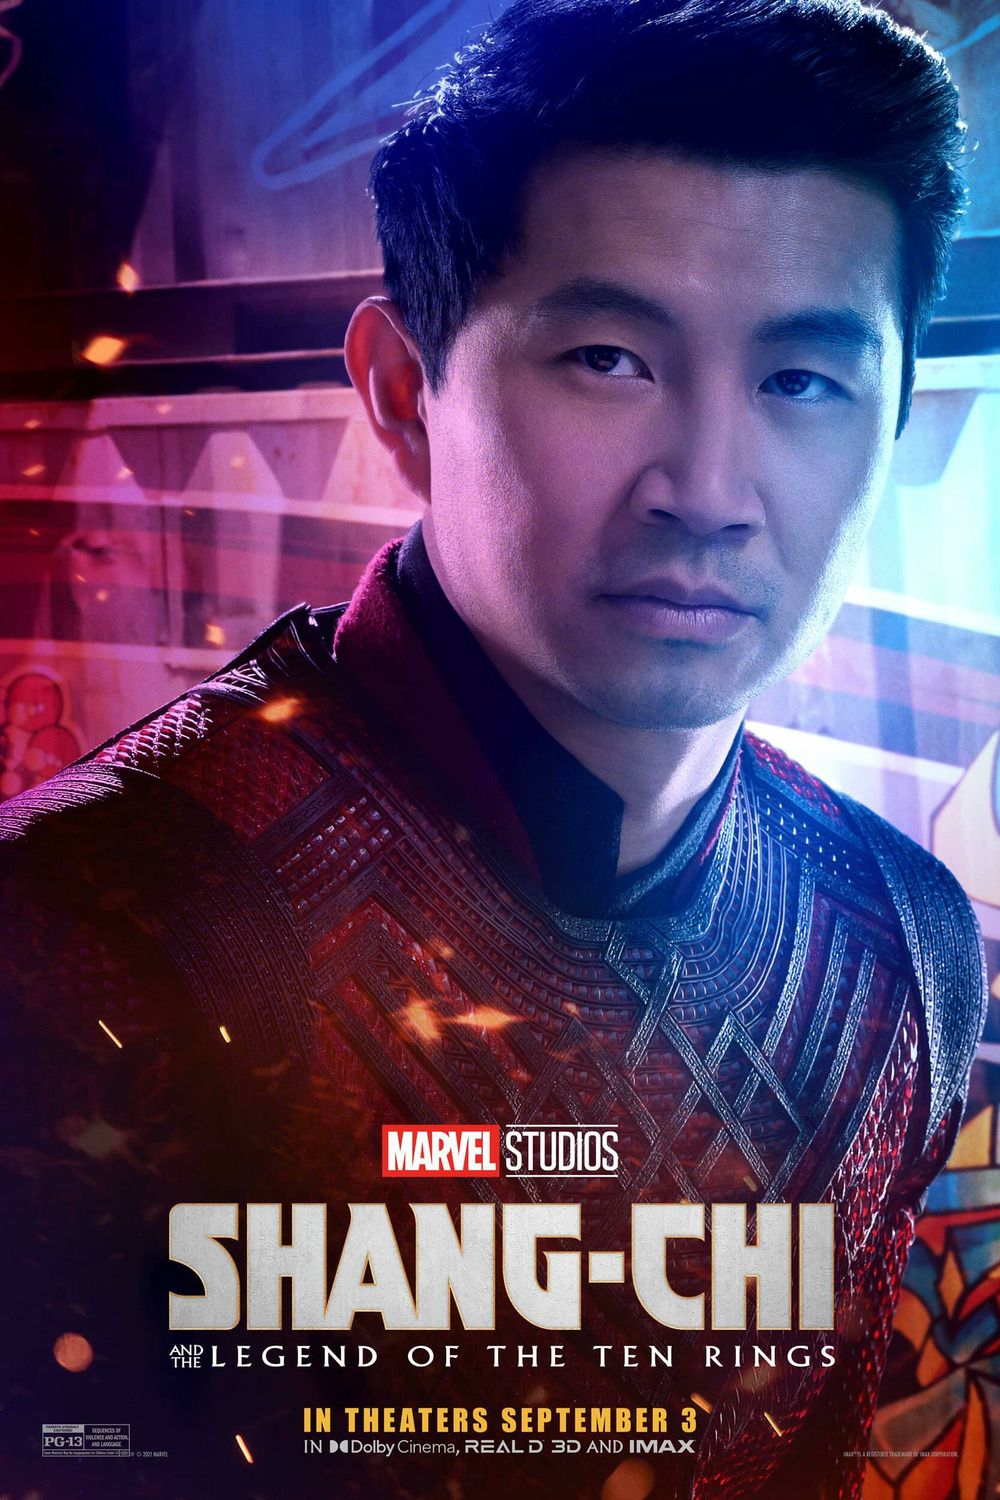 Shang Chi Character Poster Image #1